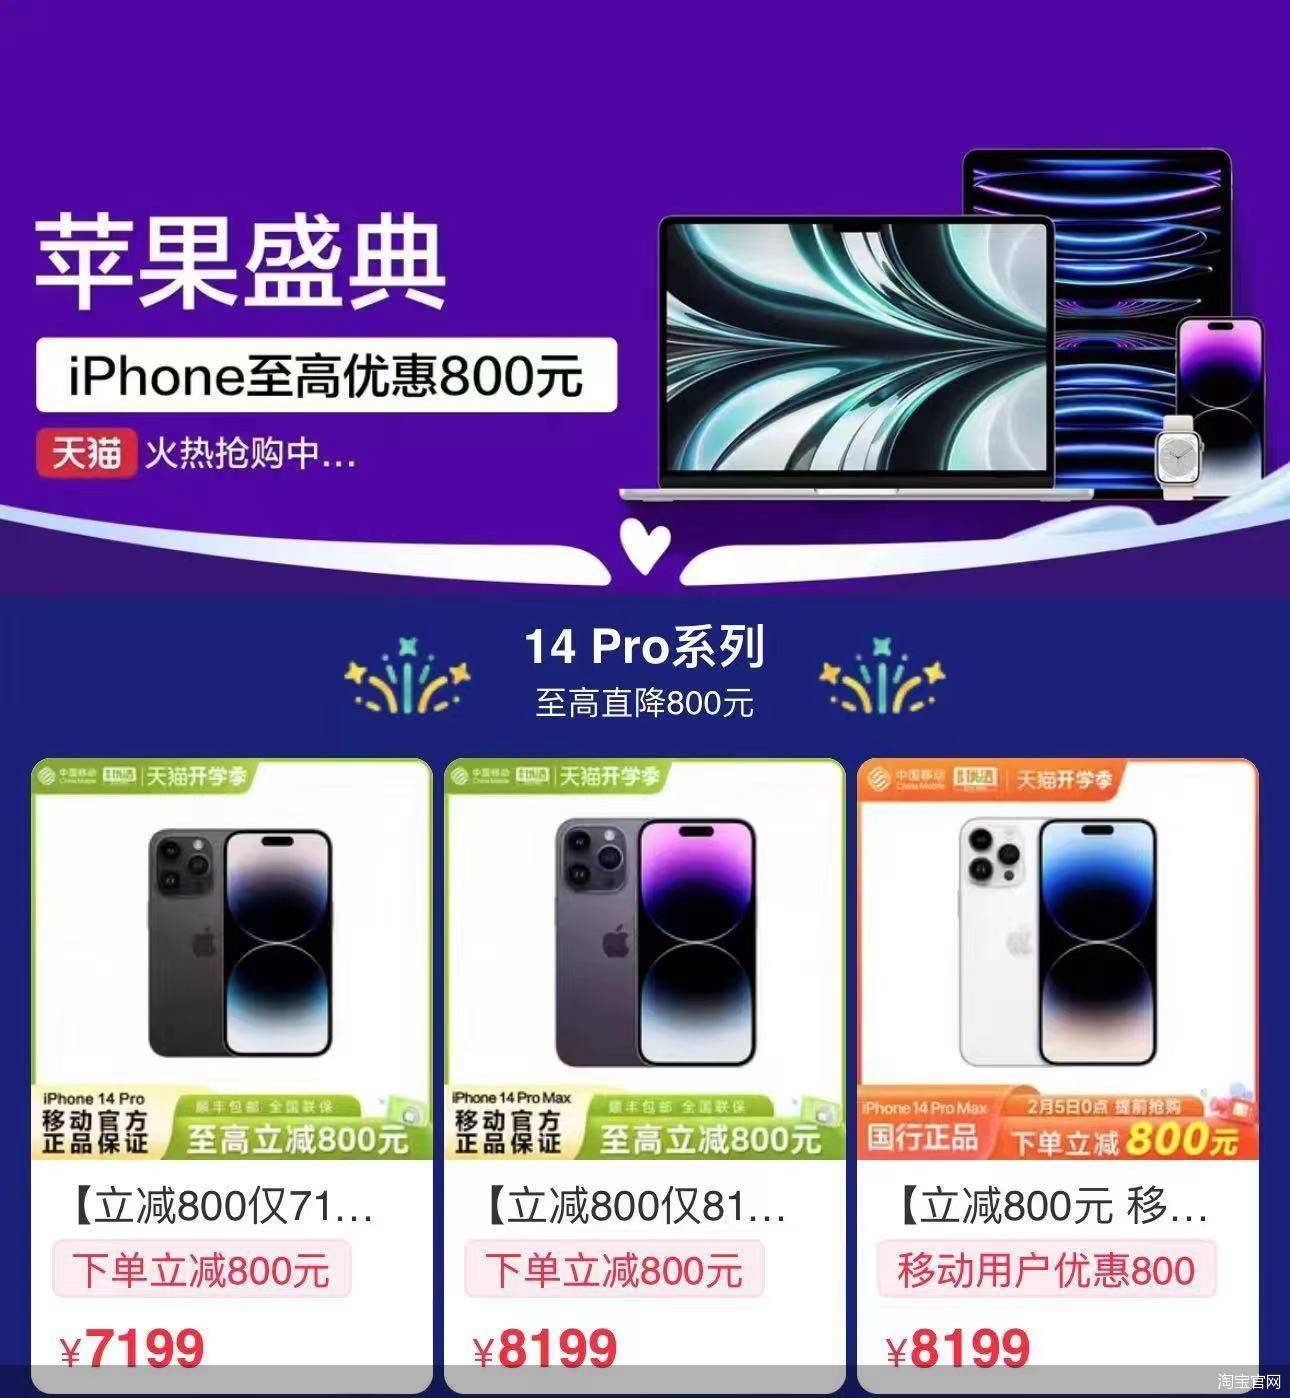 华为手机系统极客版
:iPhone 14 Pro也降价 苹果急什么